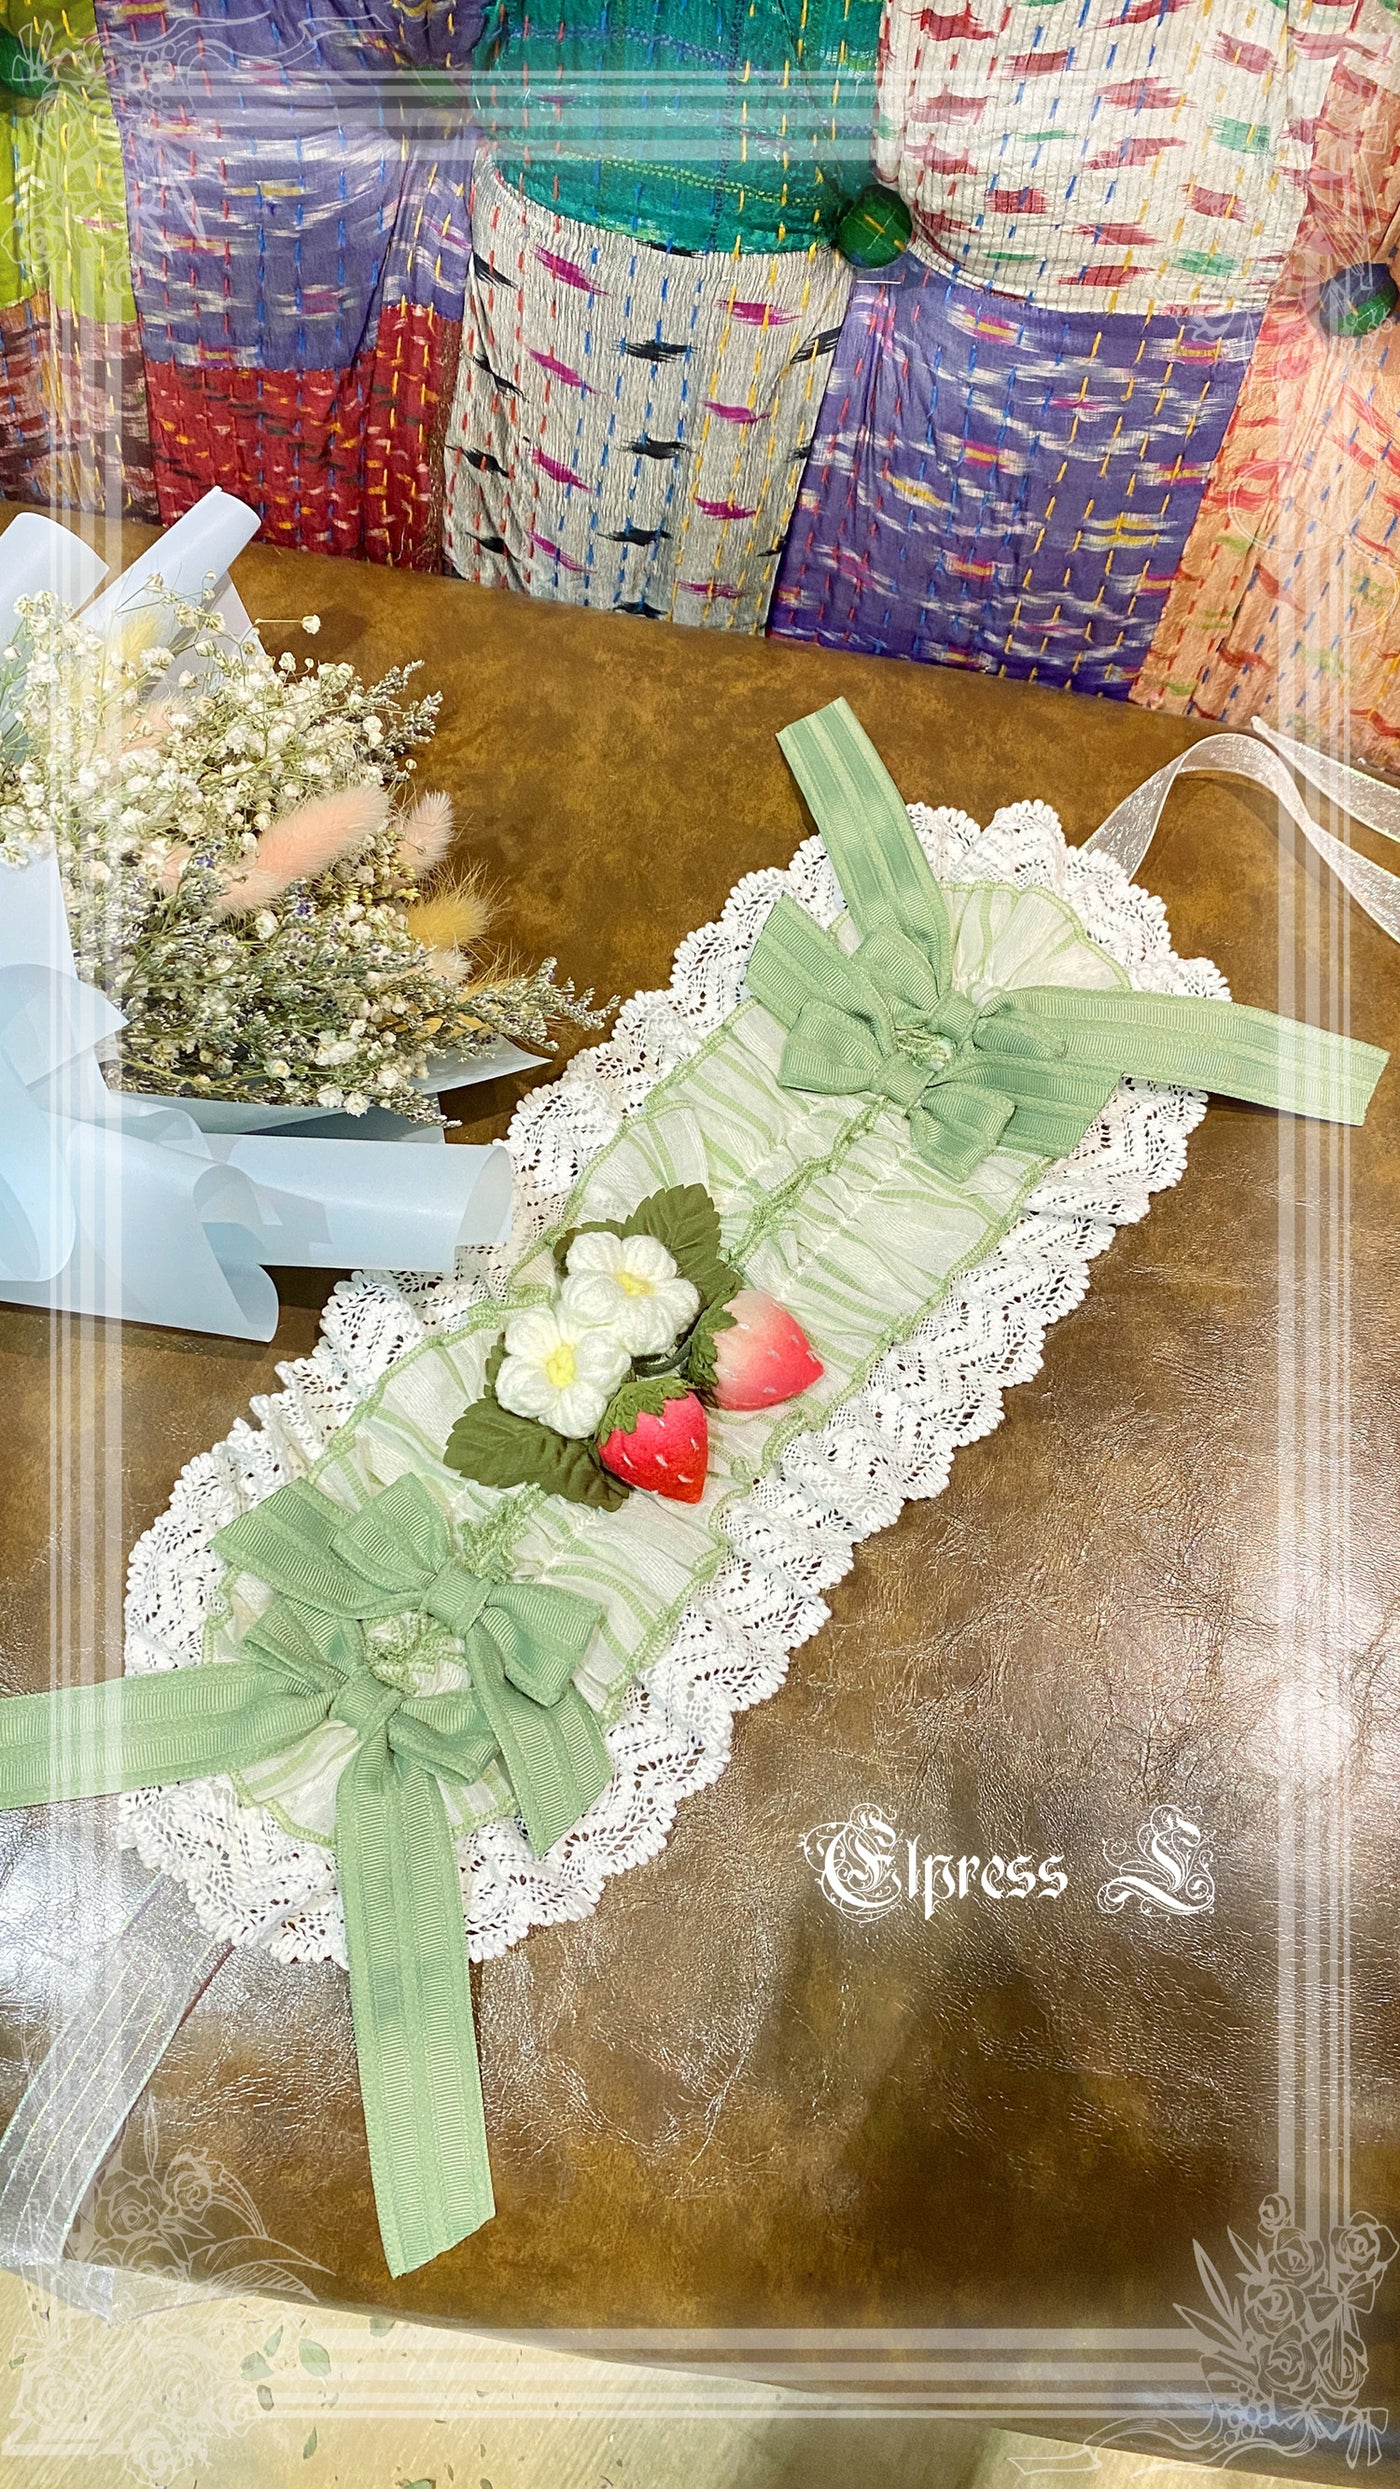 Elpress L~Strawberry Rabbit Lolita BNT Cuffs Choker green hairband 